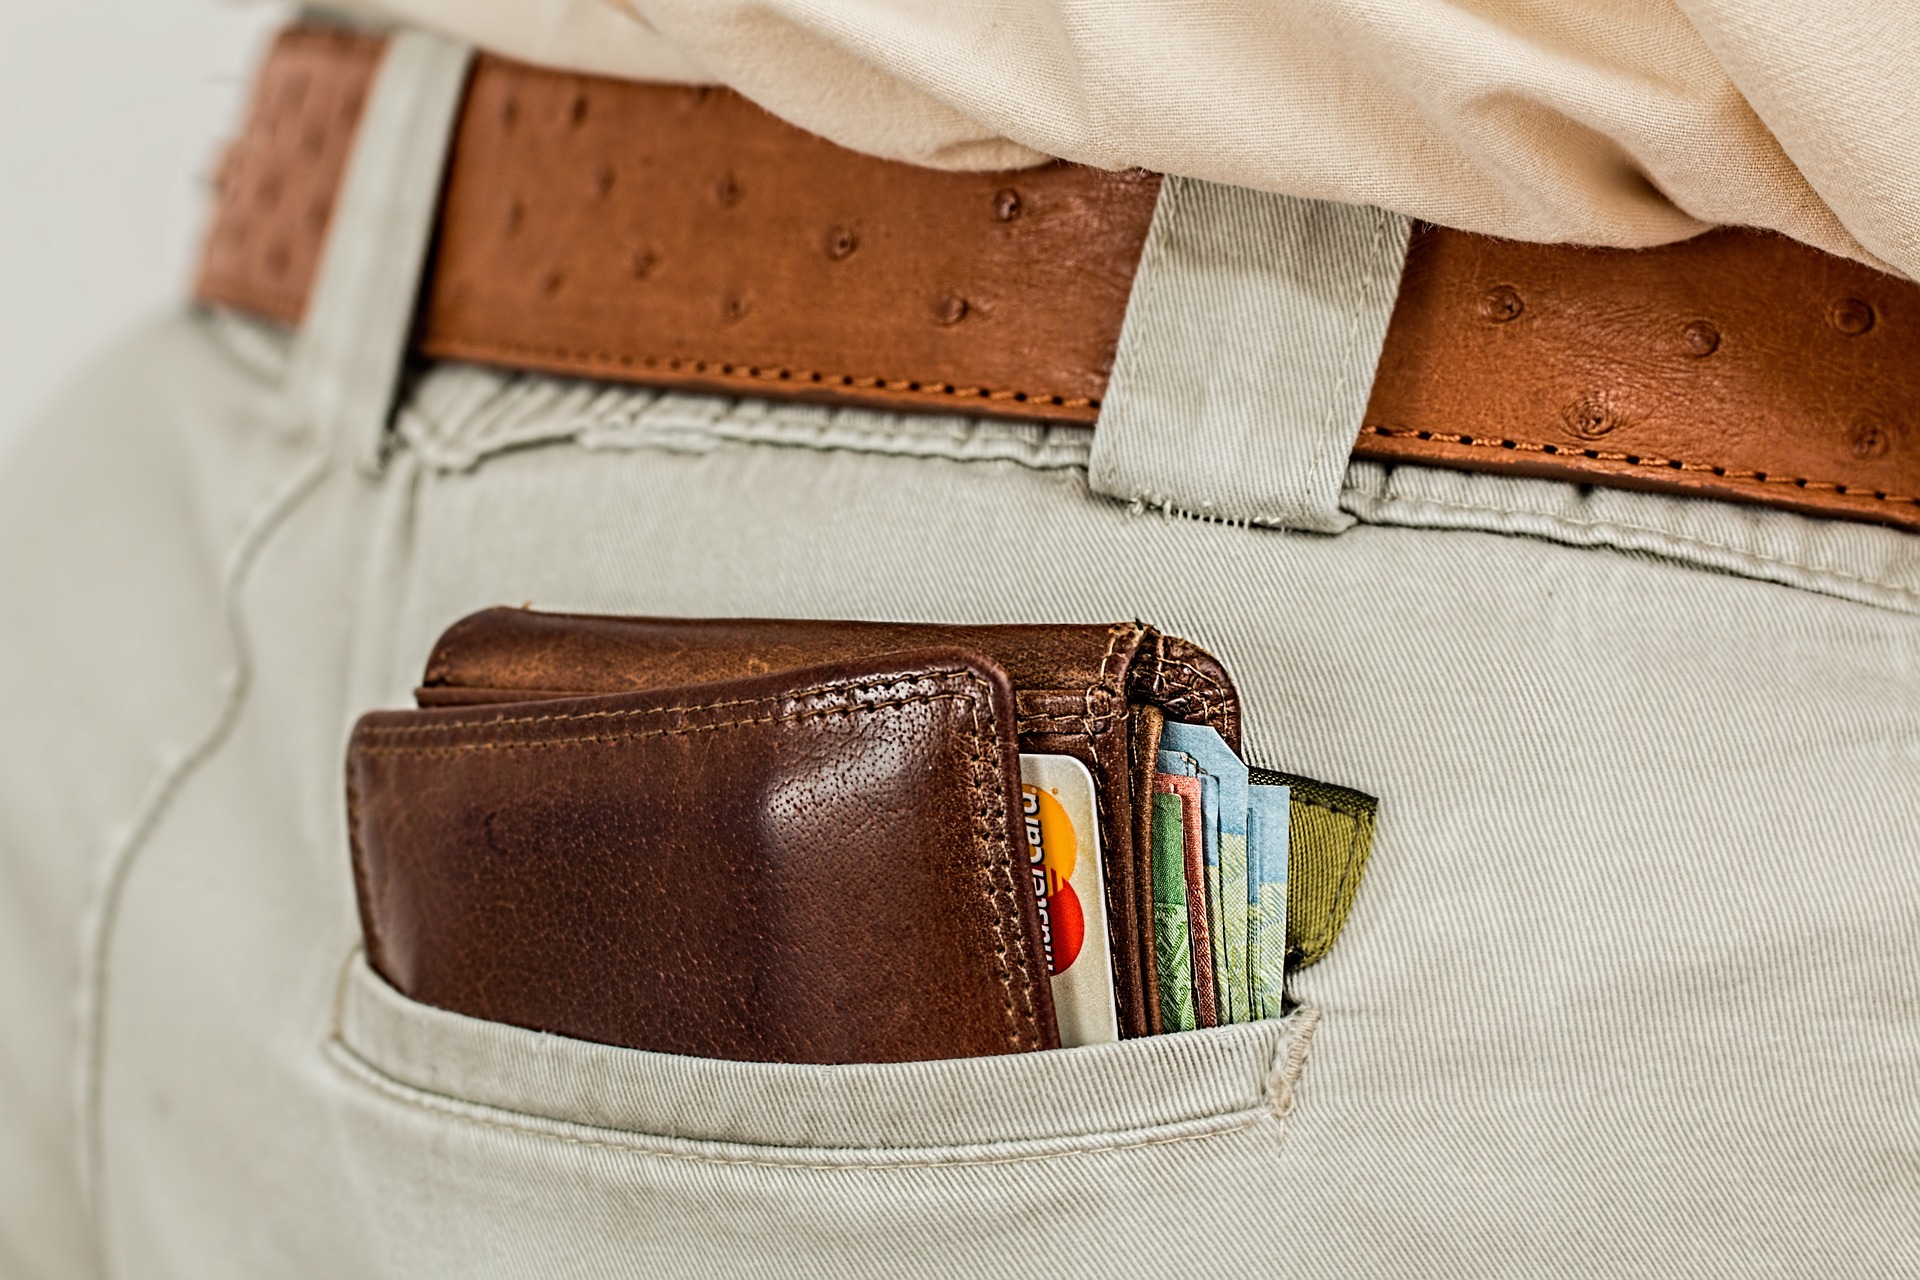 Wallet in a Back Pocket